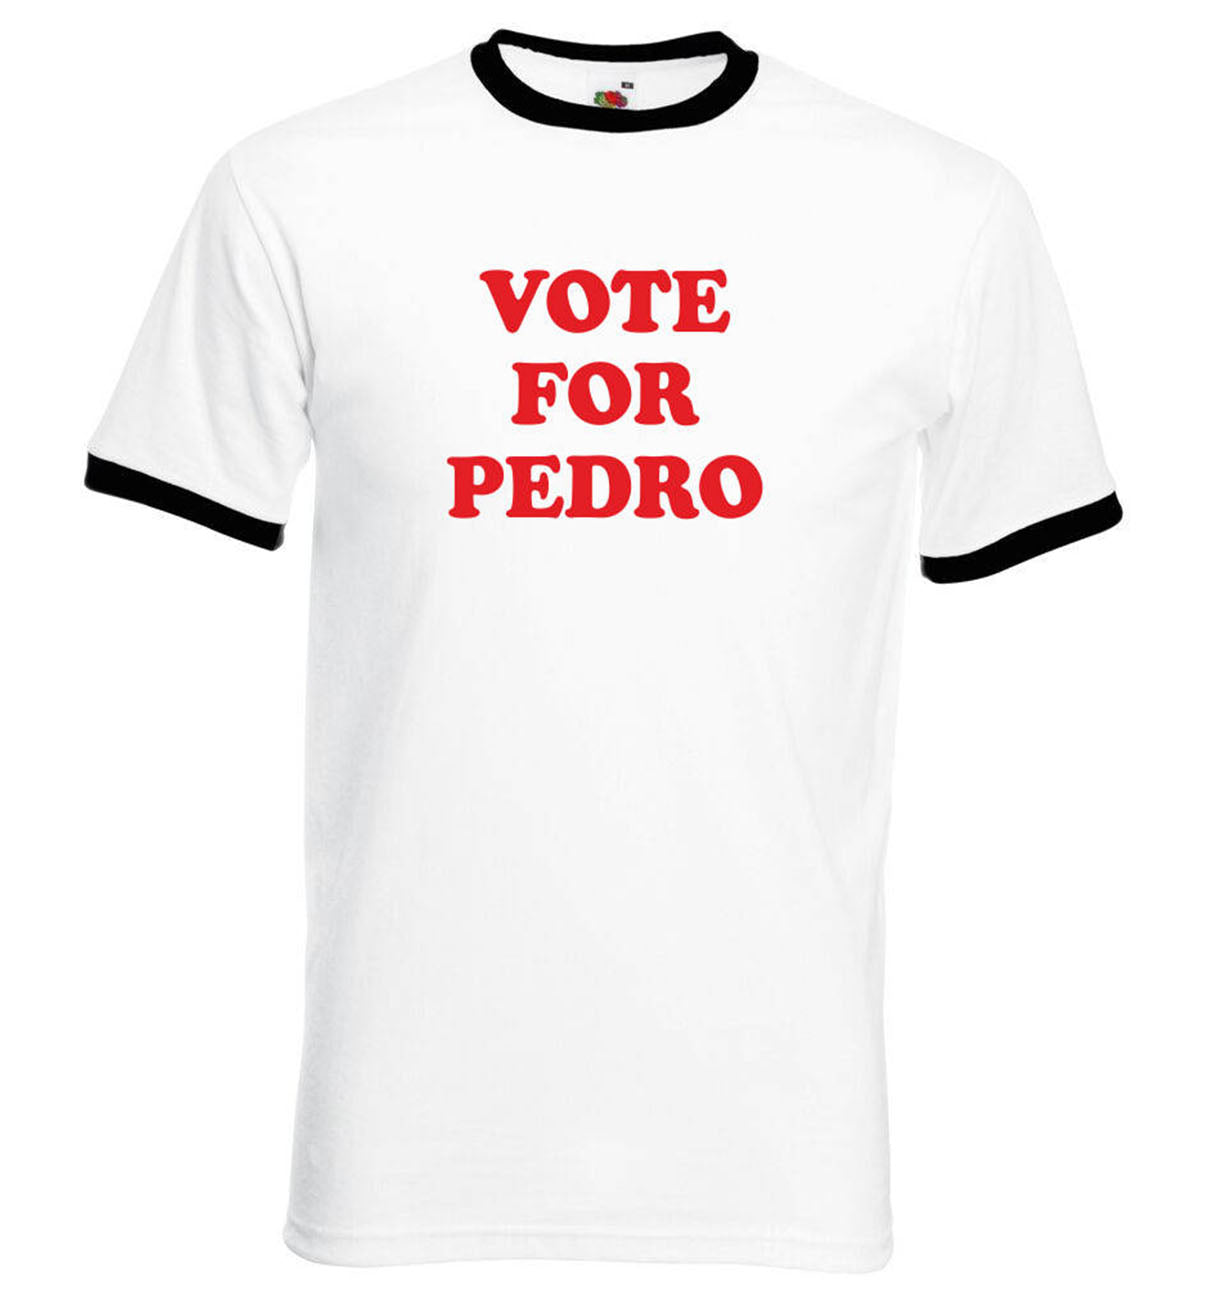 VOTE FOR PEDRO - NAPOLEON DYNAMITE MENS T-SHIRT